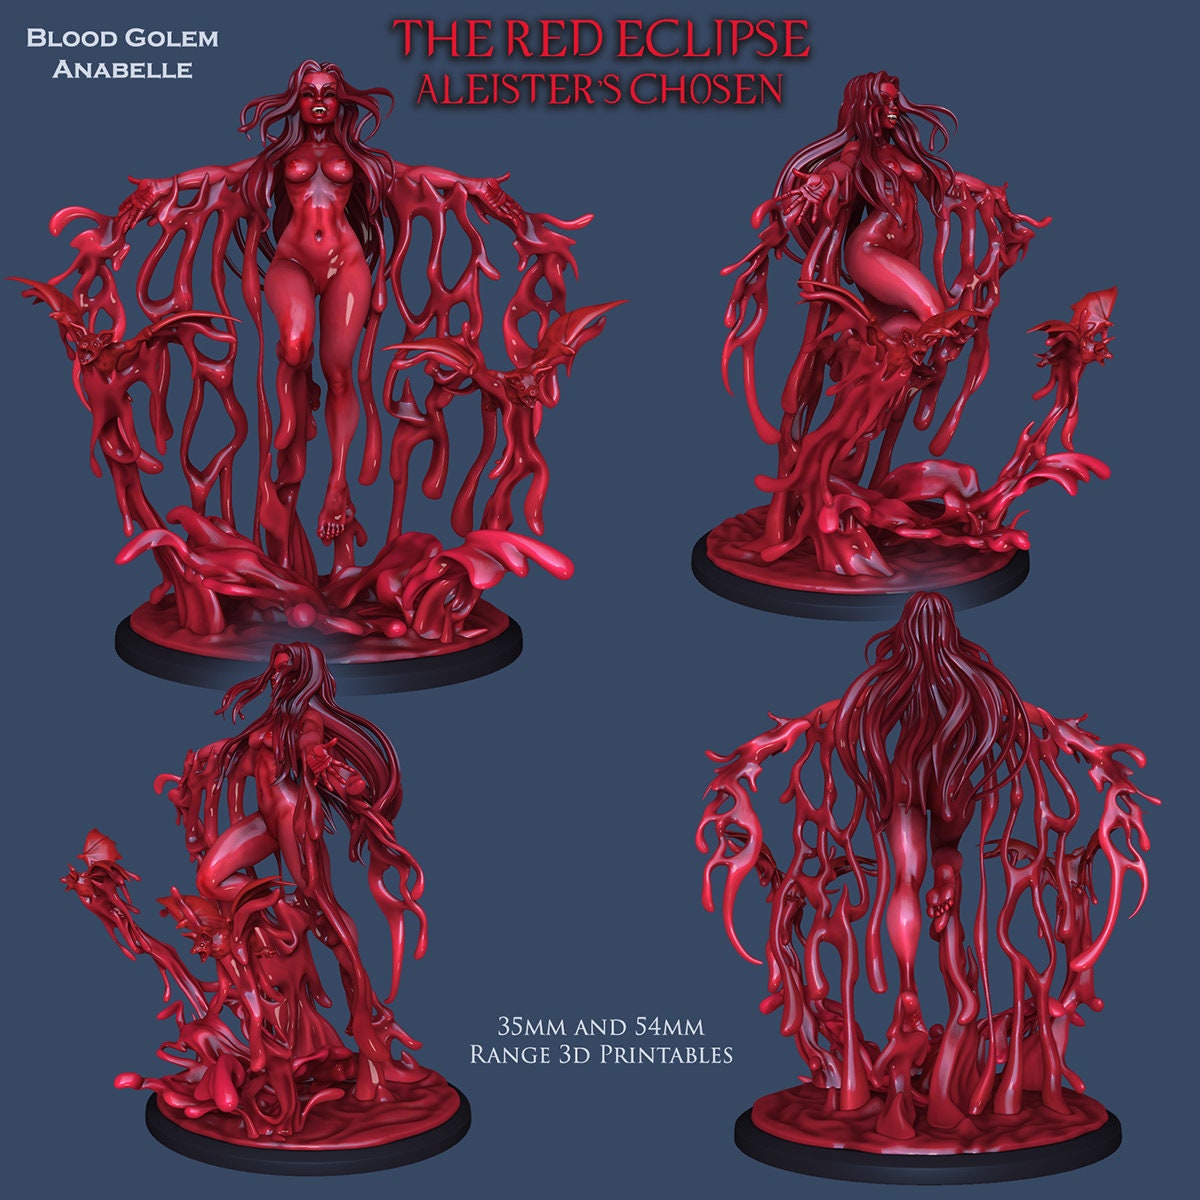 Blood Golem Anabelle | 28mm - 120mm | Resin 3D Printed | Ronin Arts Workshop